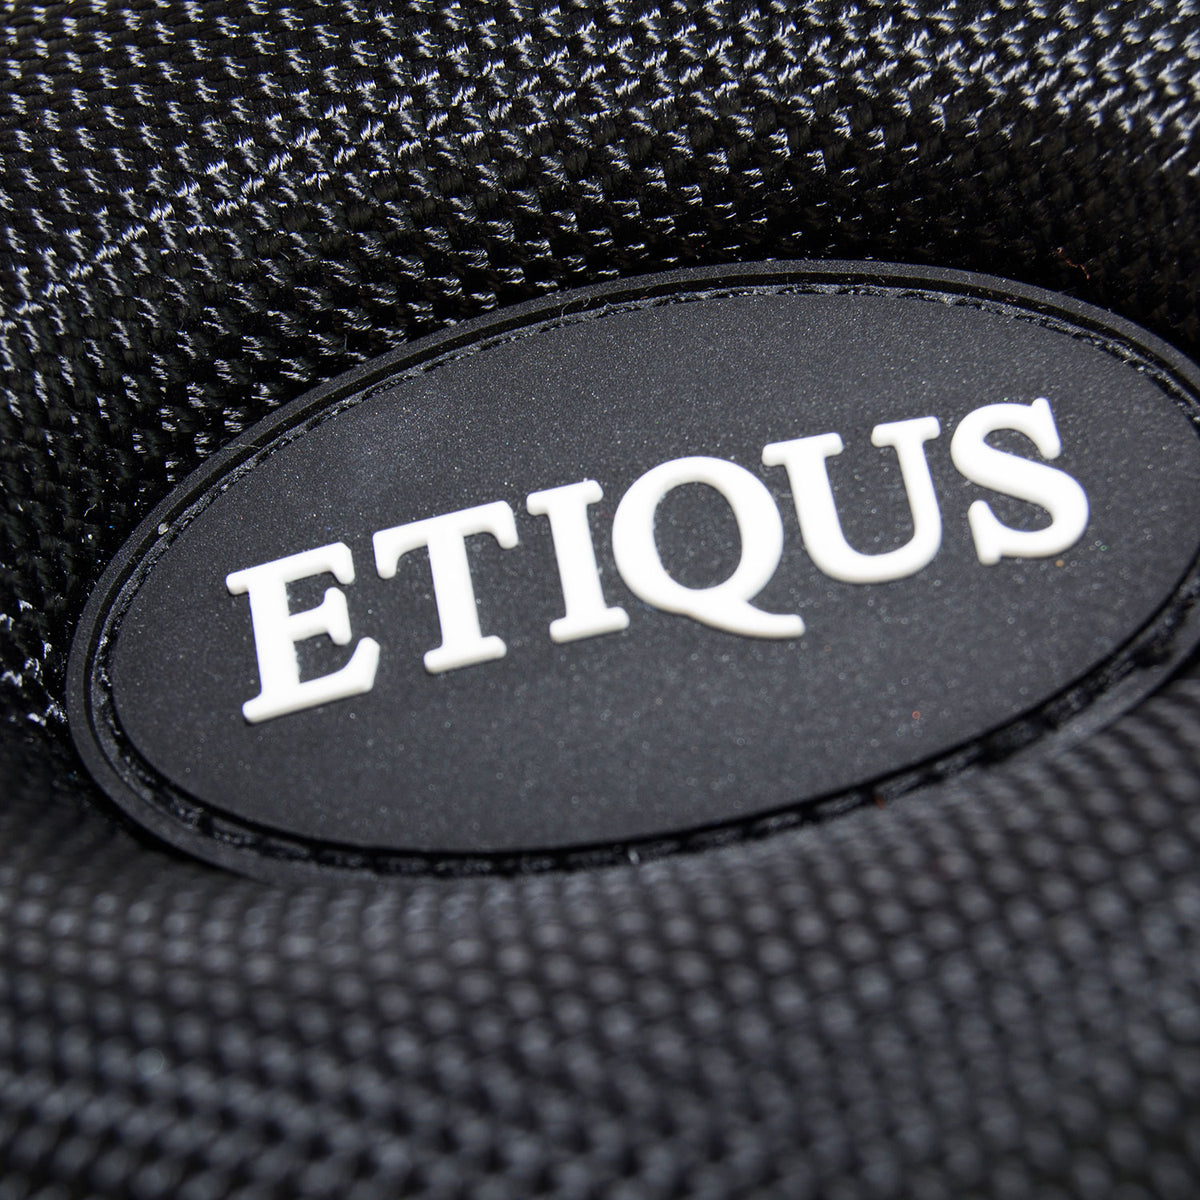 ETIQUS Protective Watch Case